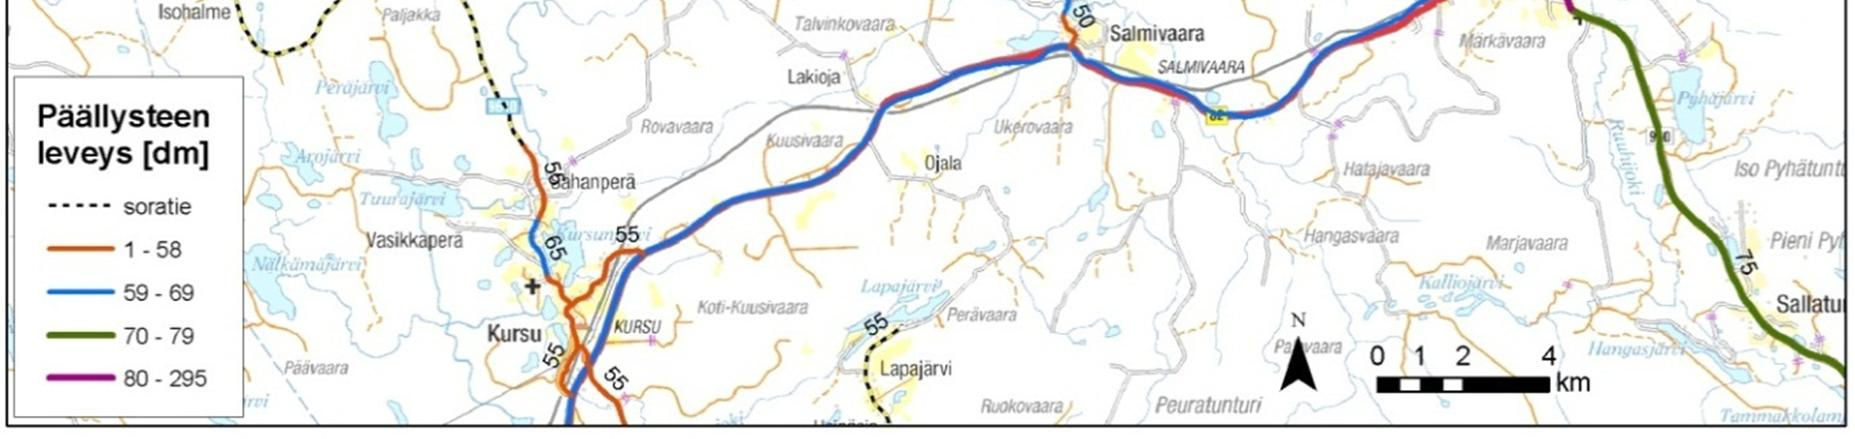 Kuva 7-19. Tieverkon kestopäällysteen leveys (dm) sekä sorapintaiset tiet ja niiden leveydet (Tierekisteri 2012) (Pohjakartta Karttakeskus Oy, Lupa L10055/13). 7.8.